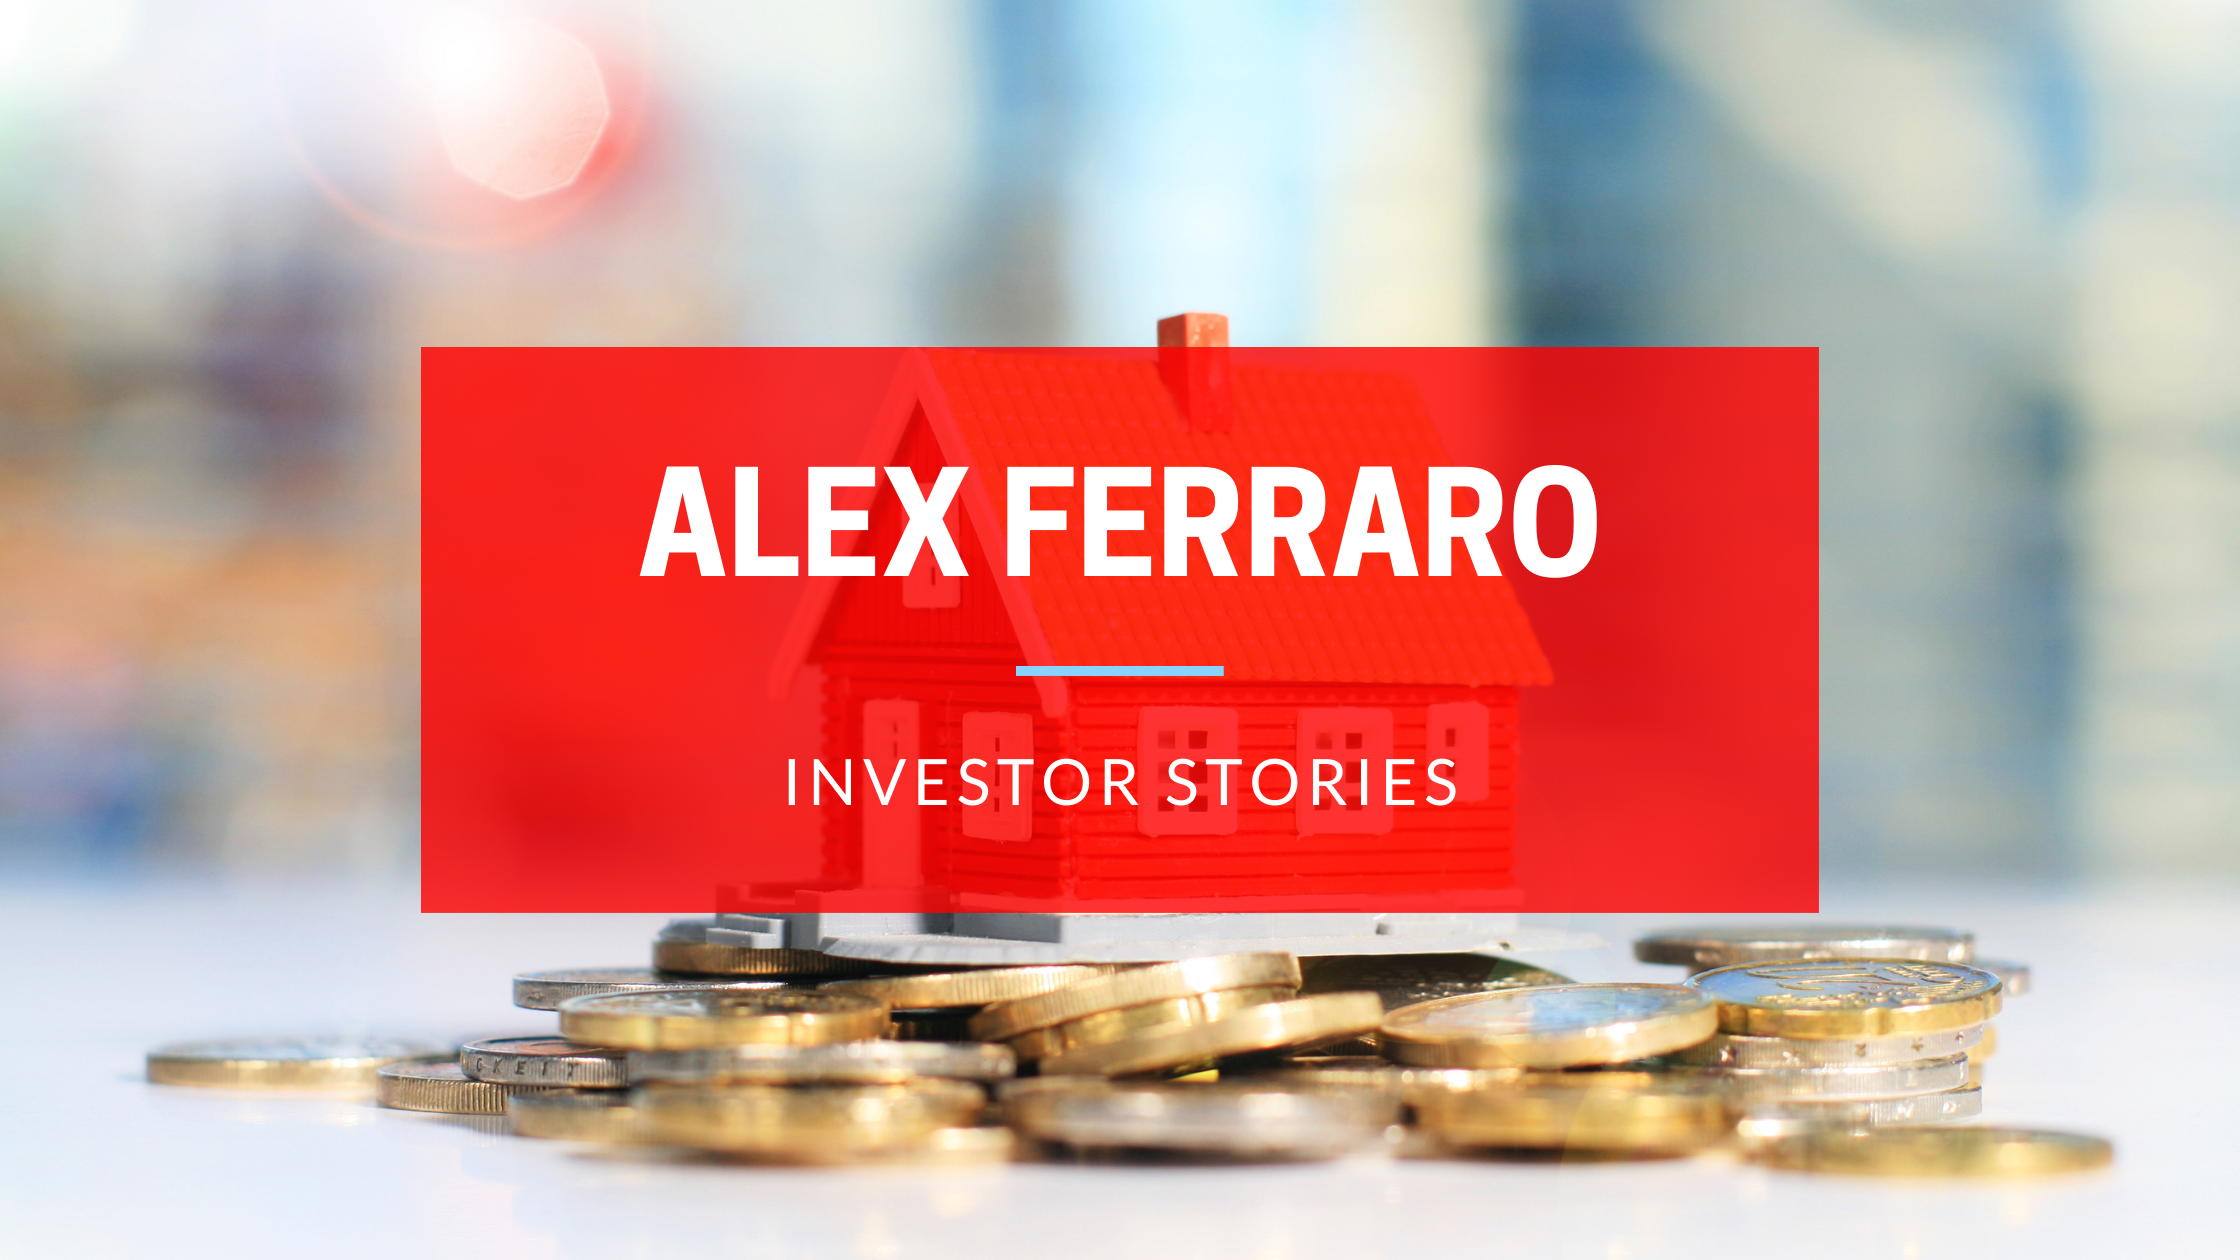 Investor Story Featuring Alex Ferraro